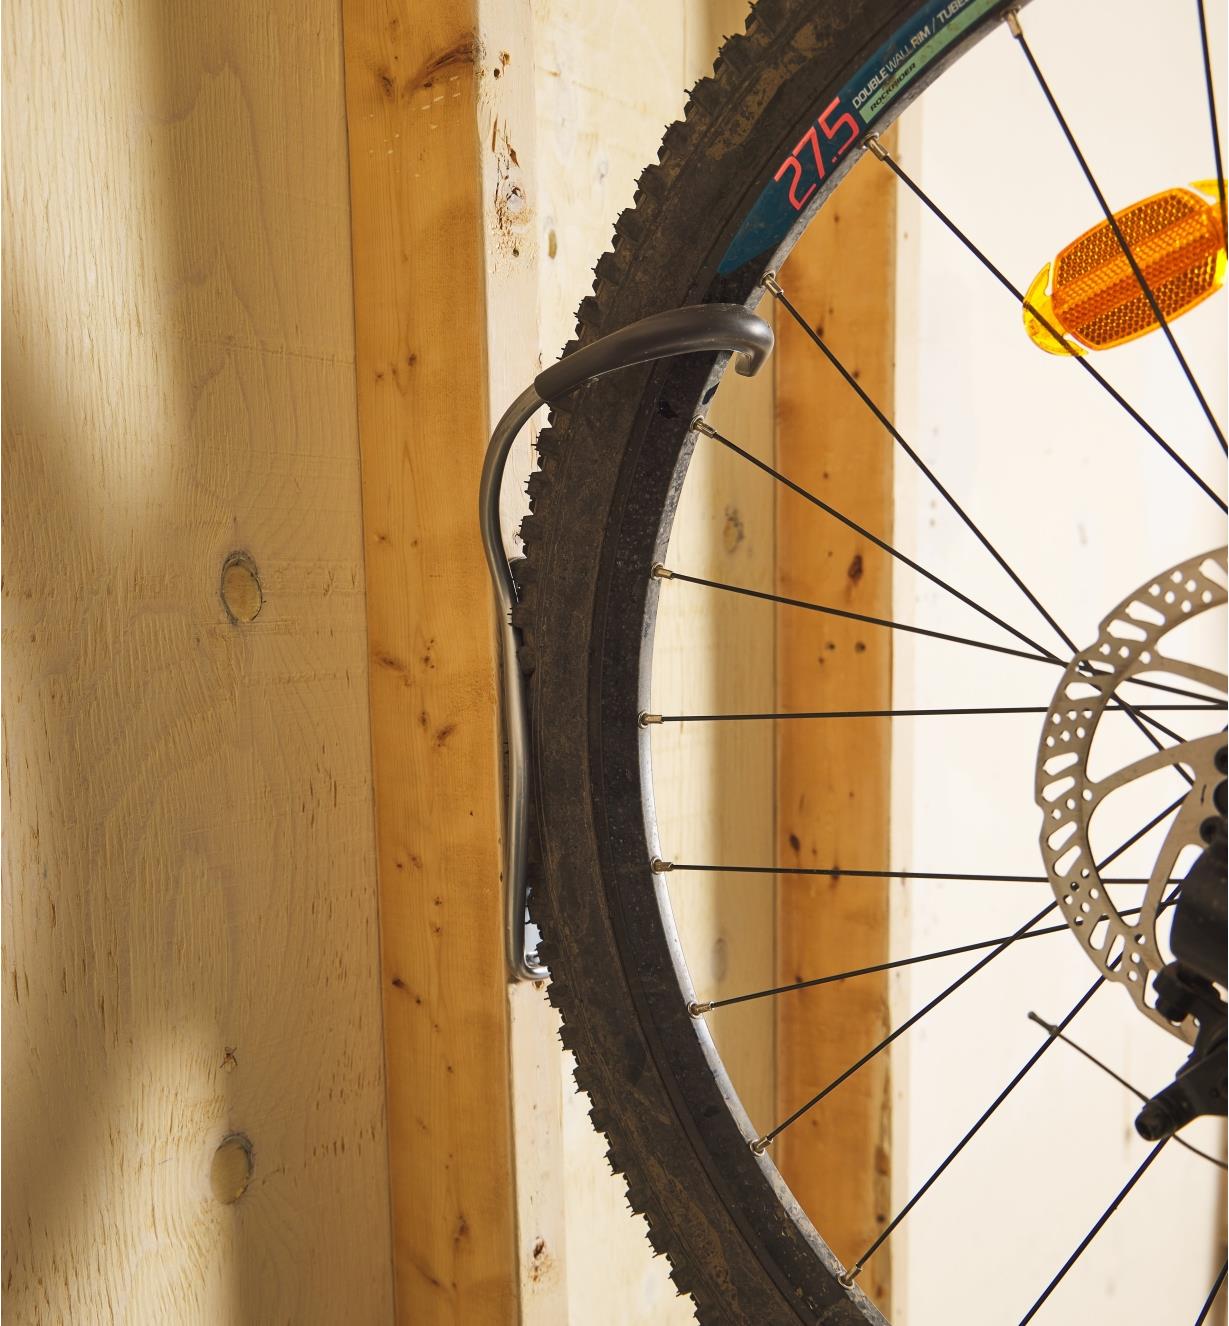 Vue rapprochée d'une roue de vélo retenue par un support vertical pour vélo fixé au mur